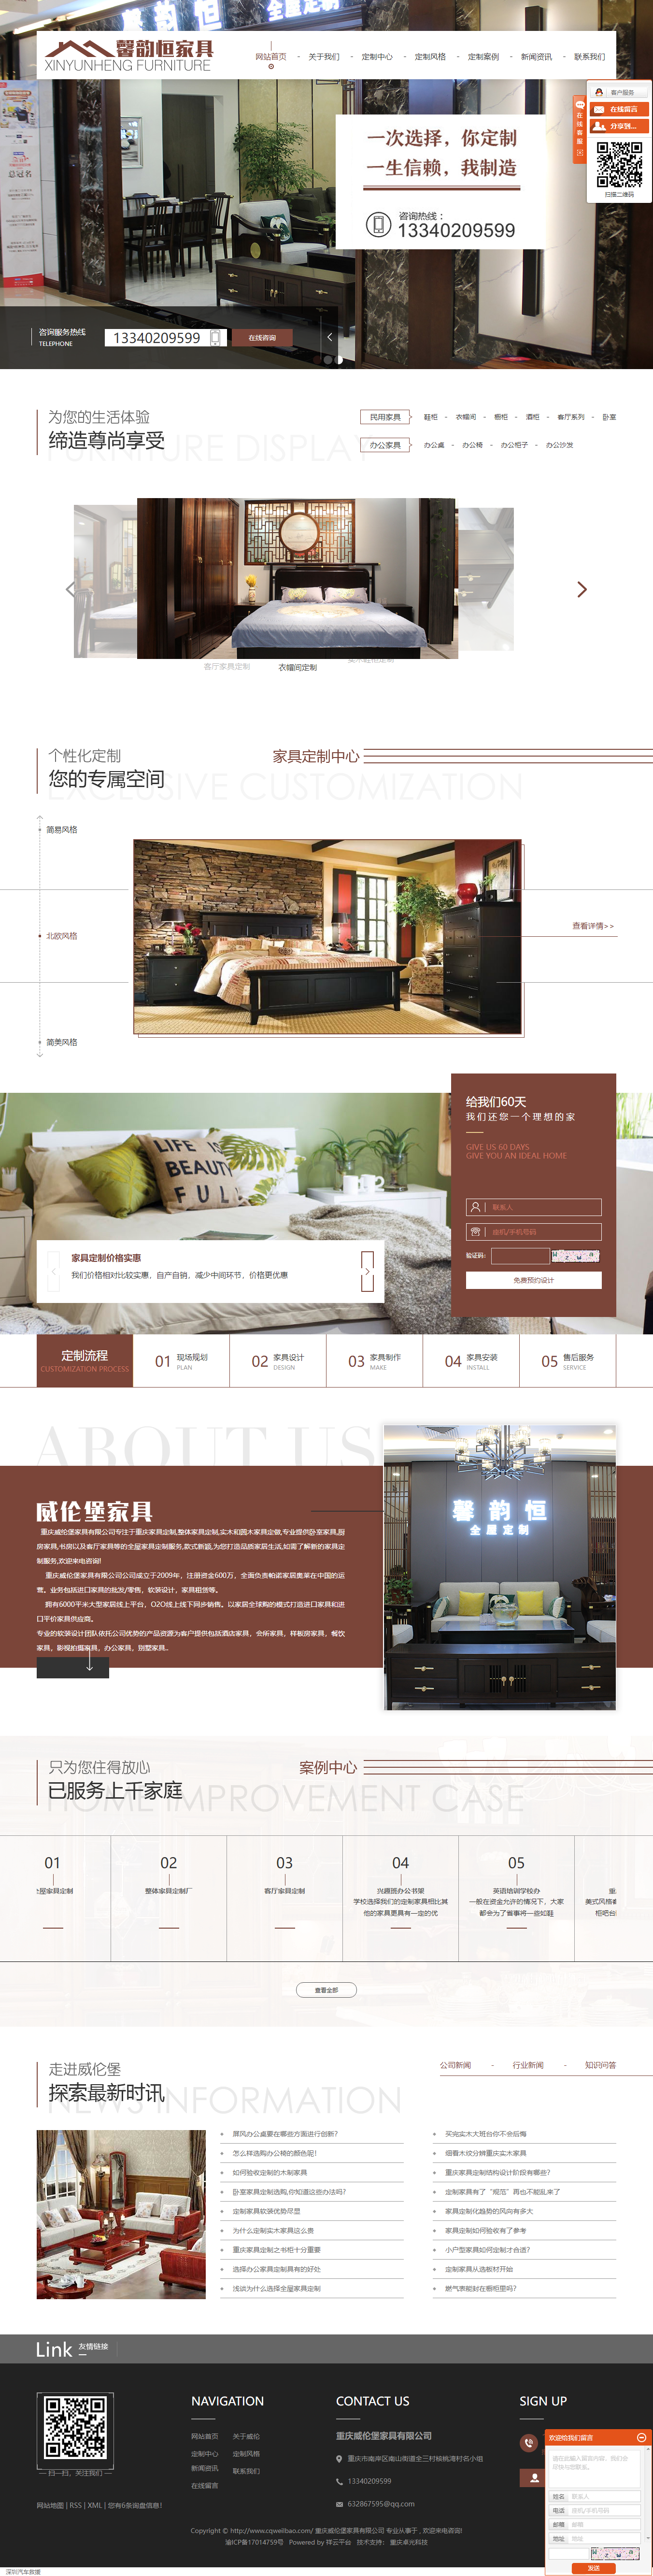 重庆威伦堡家具有限公司网站案例